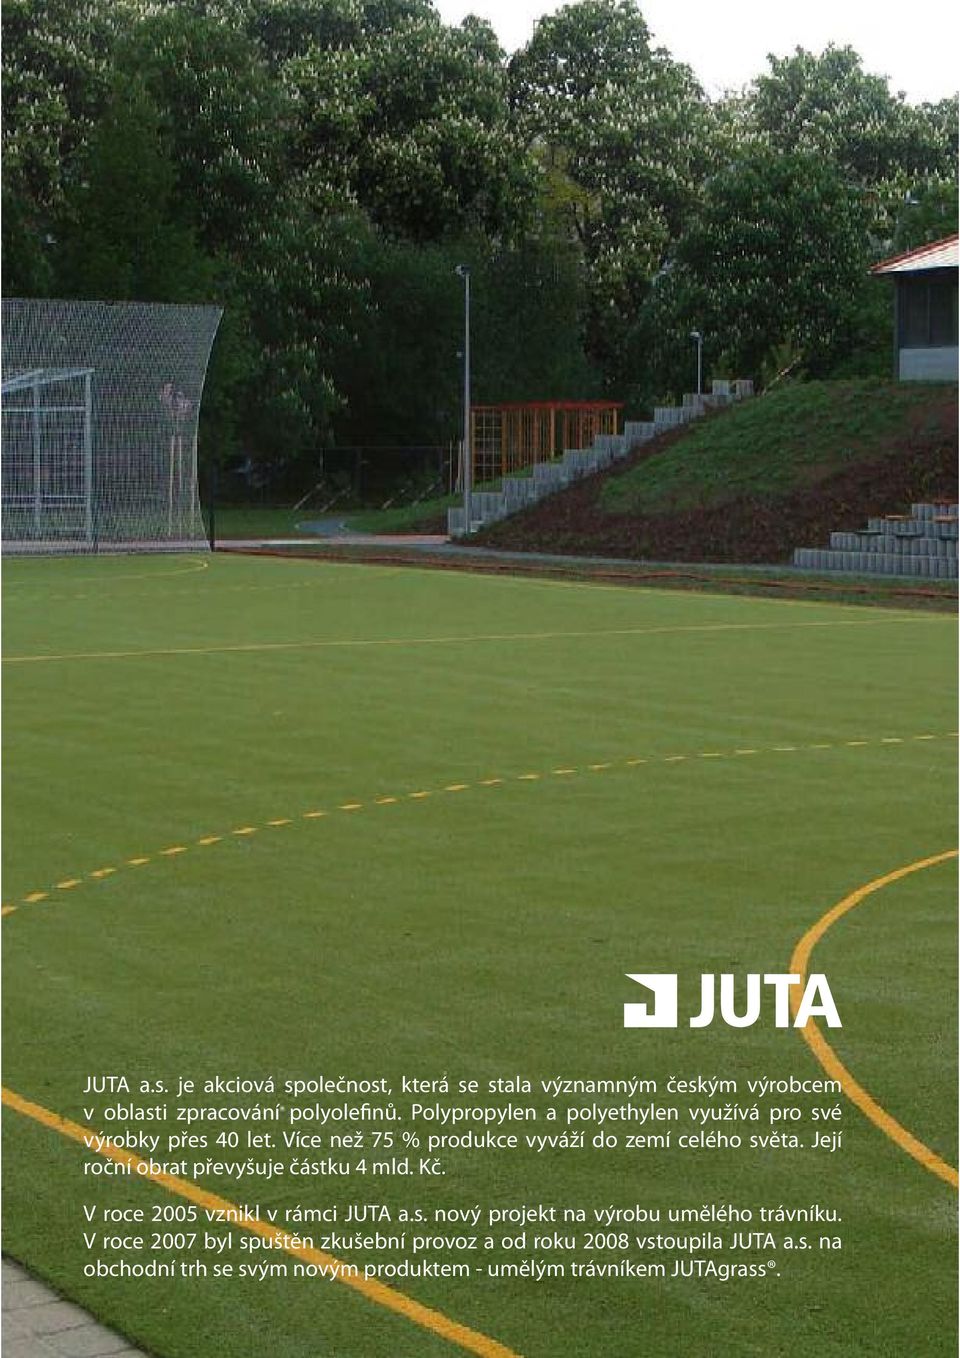 Její roční obrat převyšuje částku 4 mld. Kč. V roce 2005 vznikl v rámci JUTA a.s. nový projekt na výrobu umělého trávníku.